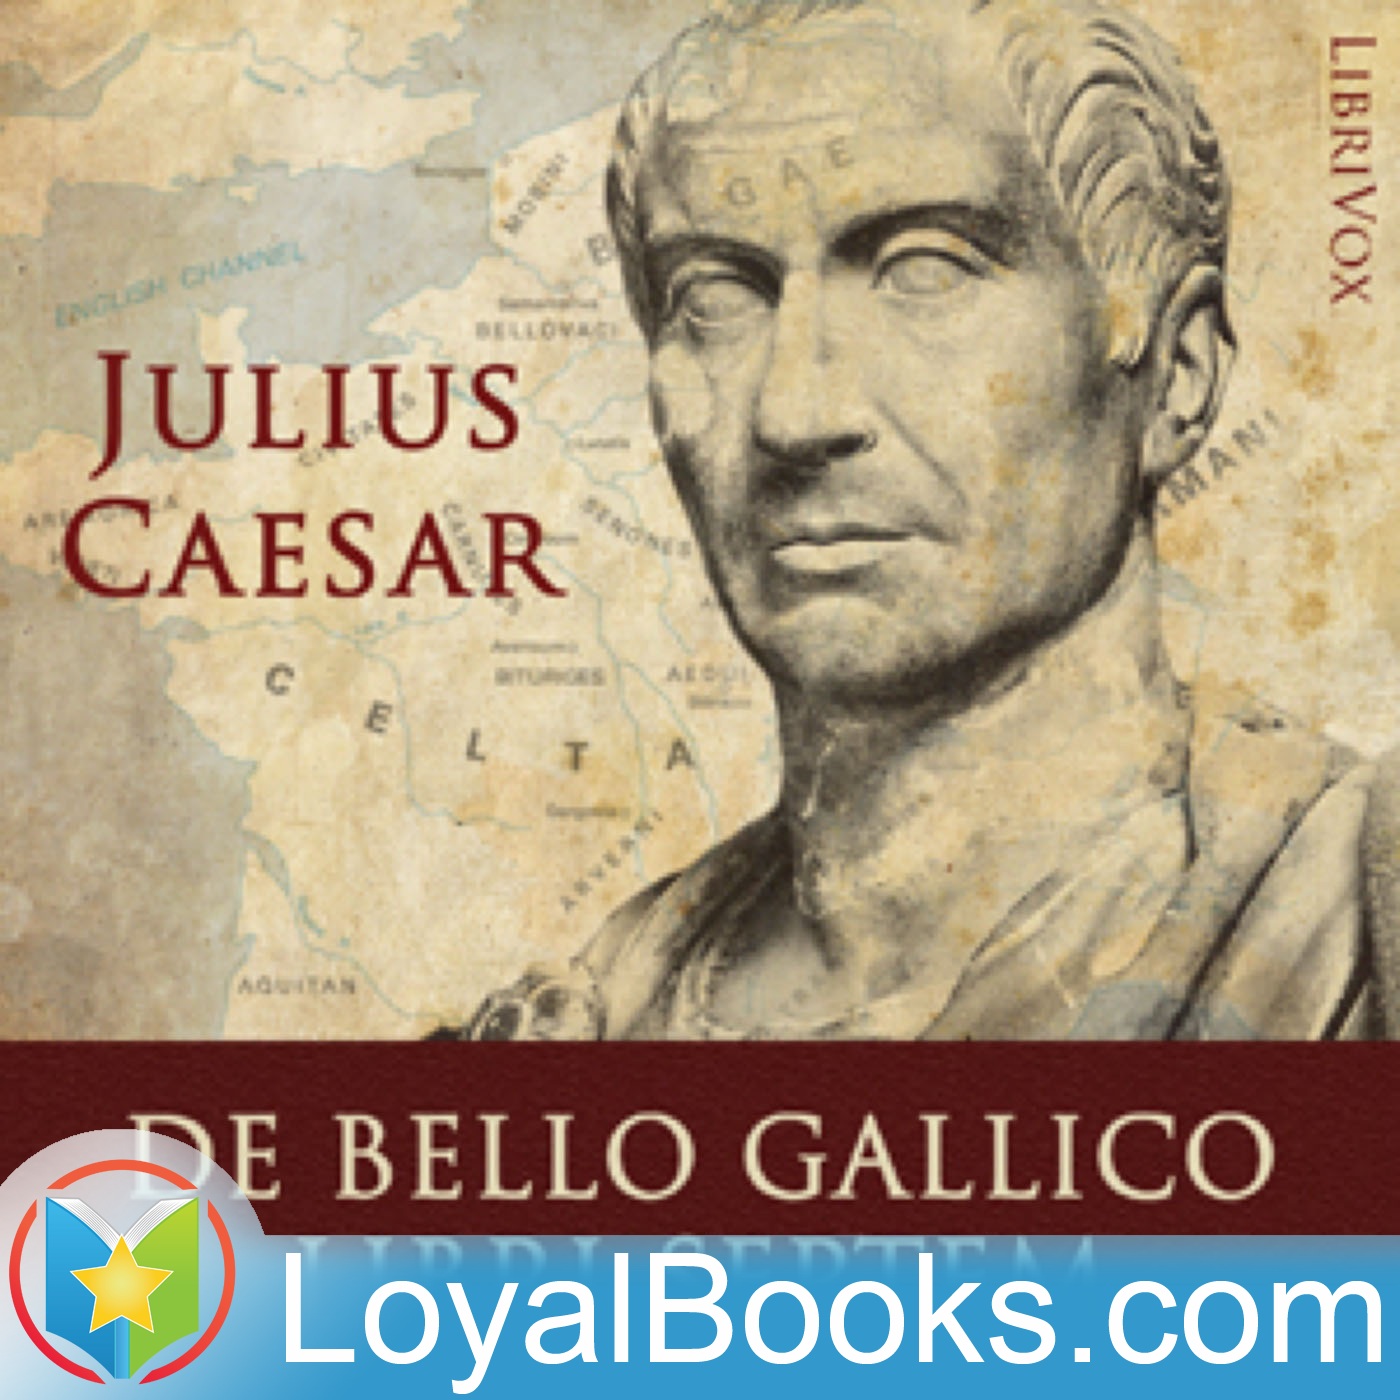 De Bello Gallico Libri Septem by Gaius Julius Caesar